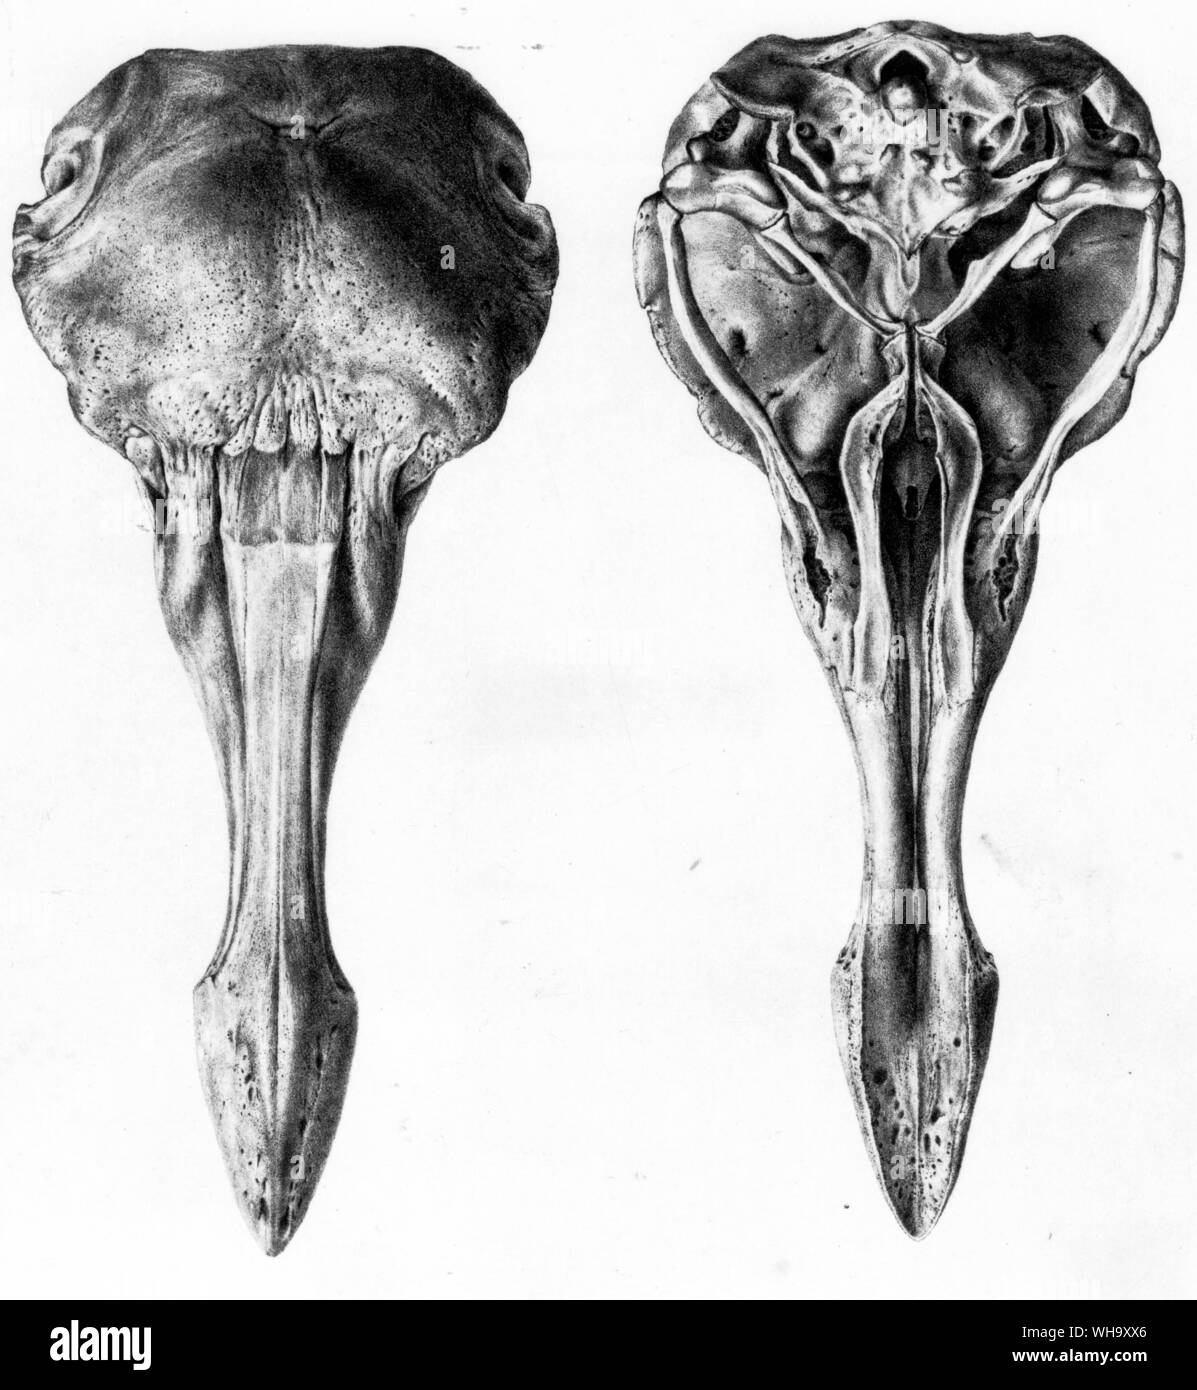 Dodo cranio da sopra e da sotto. Litografie da S.E. Strickland e A.G. Melville è il Dodo e la sua parentela (Londra, 1848) - Lunghezza di uccello 100cm (3 ft 3 in) Foto Stock